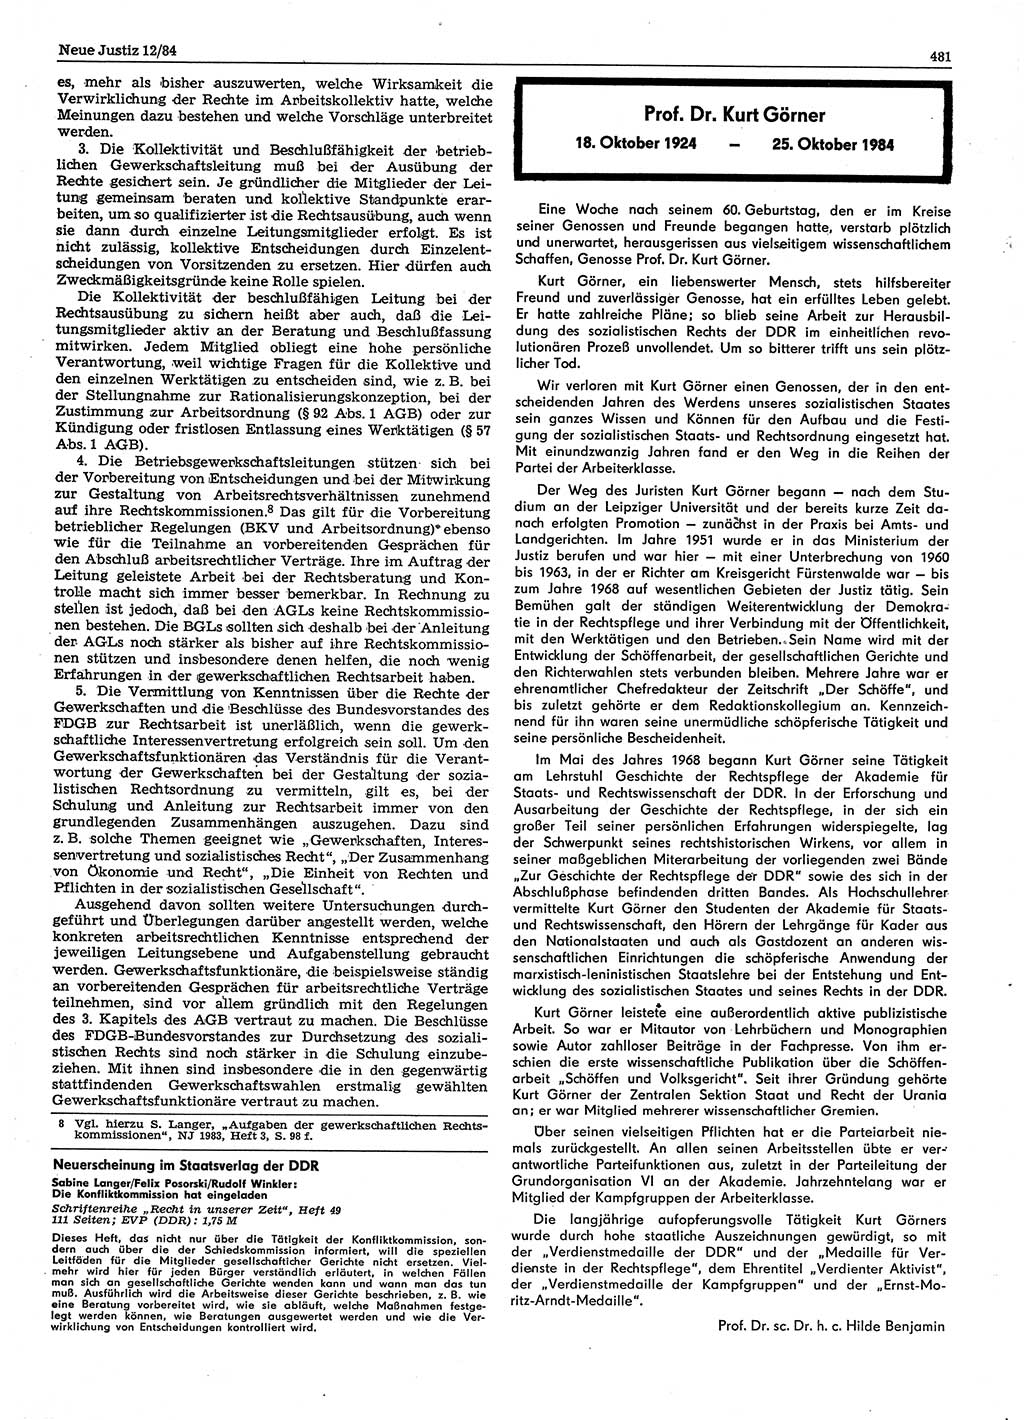 Neue Justiz (NJ), Zeitschrift für sozialistisches Recht und Gesetzlichkeit [Deutsche Demokratische Republik (DDR)], 38. Jahrgang 1984, Seite 481 (NJ DDR 1984, S. 481)